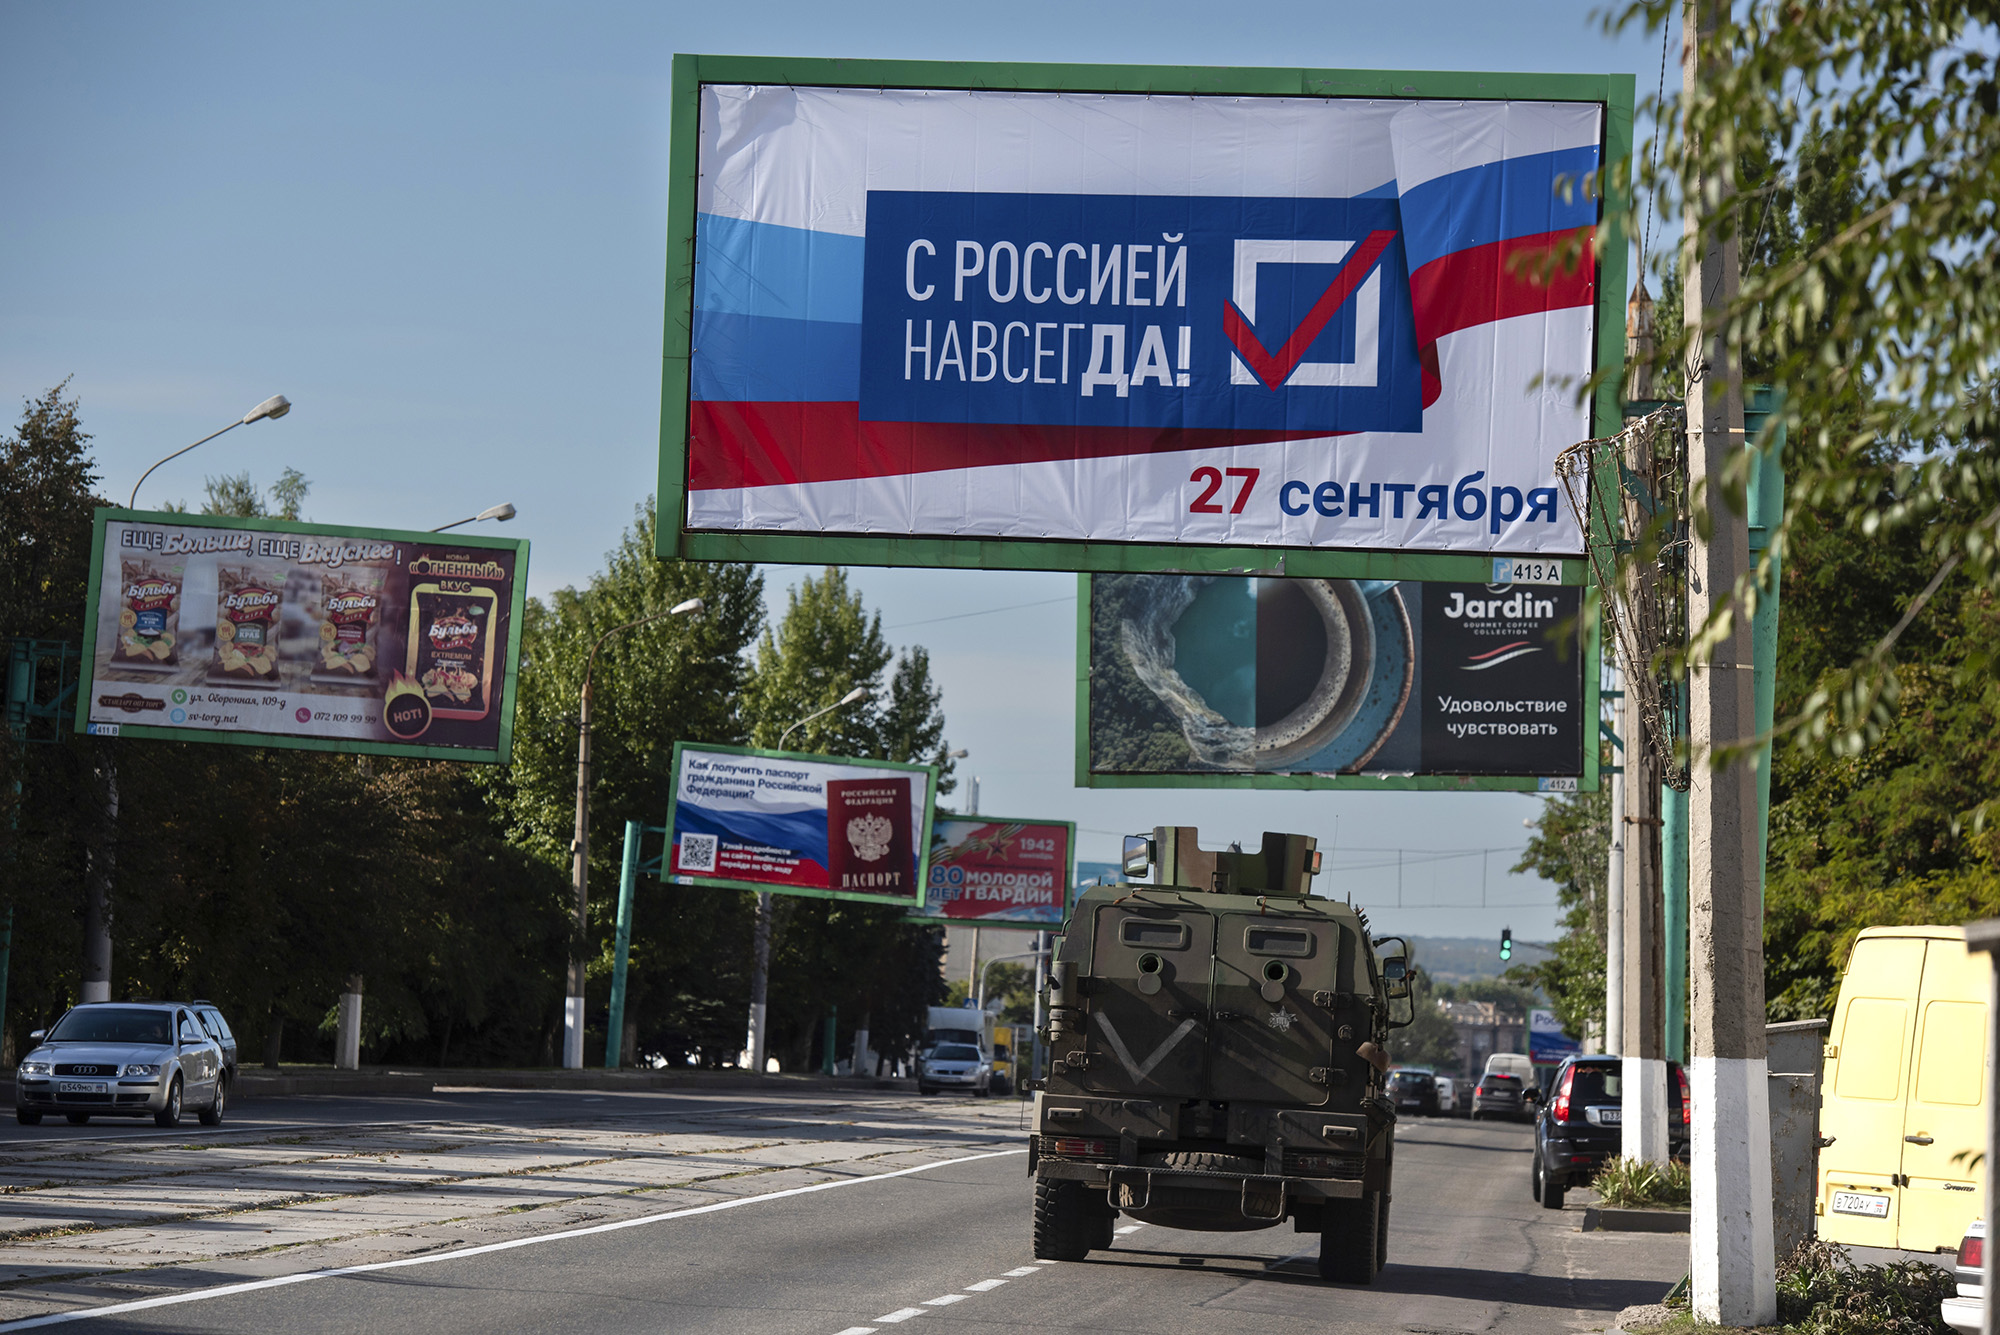 Военная машина едет по улице с рекламным щитом "С Россией навсегда, 27 сентября" Перед референдумом в Луганске, восток Украины, 22 сентября.